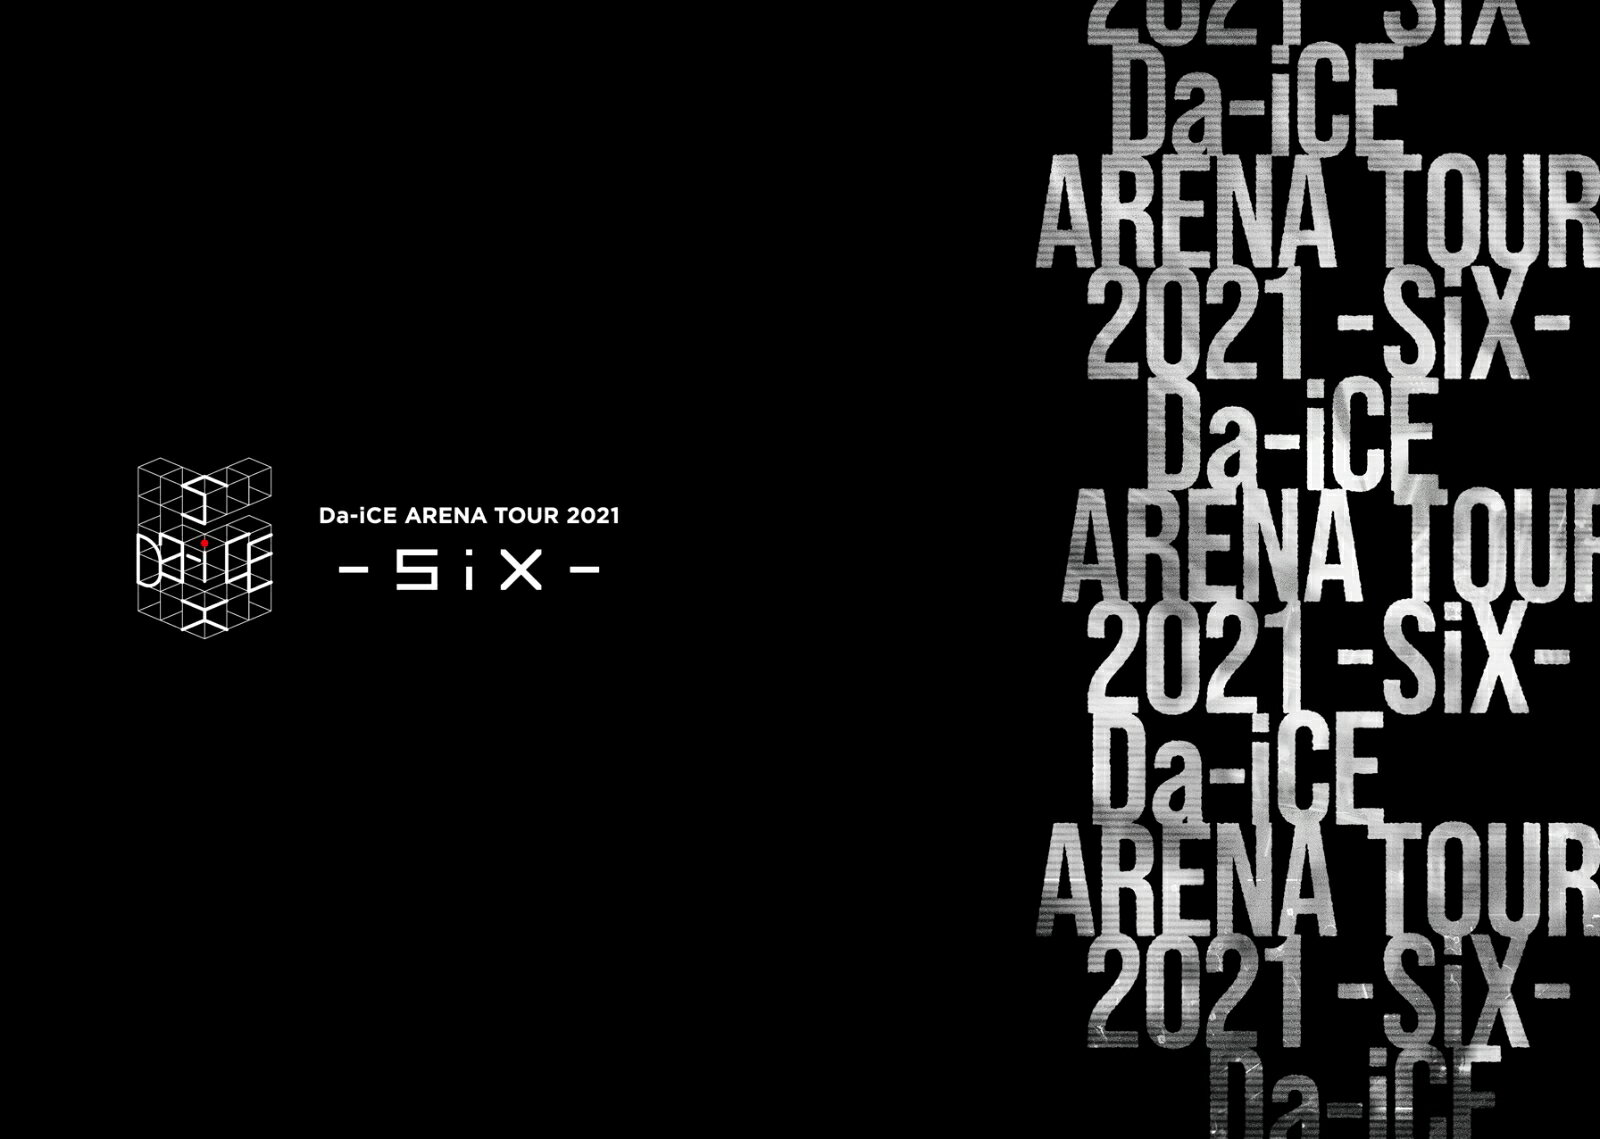 【先着特典】Da-iCE ARENA TOUR 2021 -SiX-(初回生産限定 DVD3枚組(スマプラ対応))(ポストカードSide Aデザイン + ポストカードSide Bデザイン)